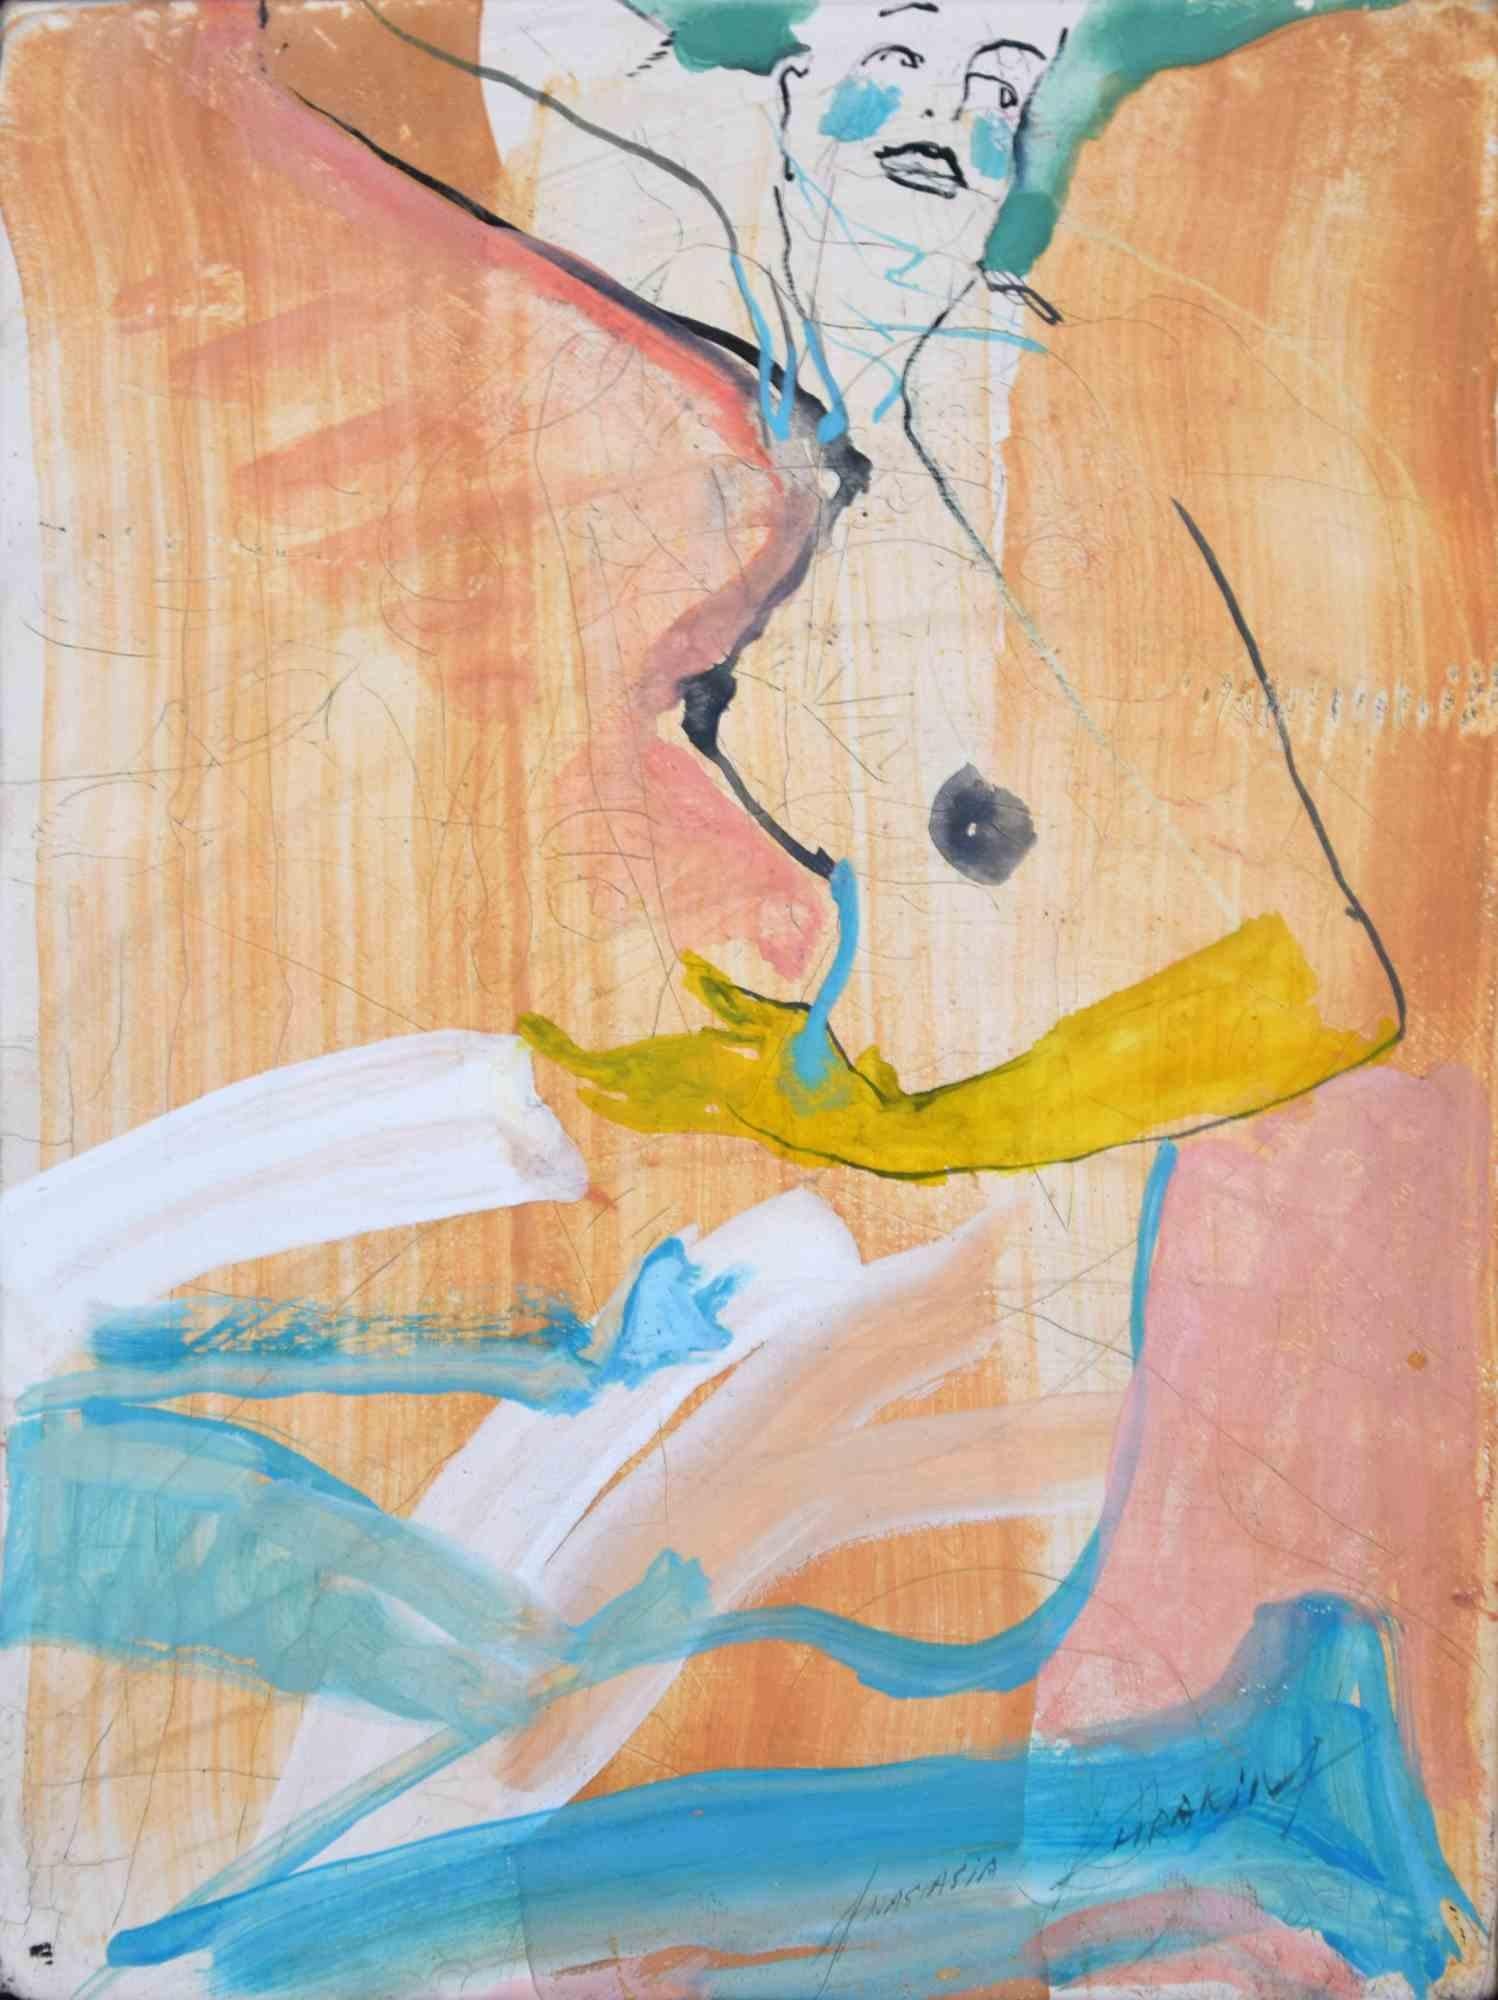 A woman ist ein zeitgenössisches Kunstwerk, das 2018 von der aufstrebenden Künstlerin Anastasia Kurakina realisiert wurde.

Gemischte farbige Aquarell- und Tuschezeichnung auf Tafel.

Gute Bedingungen

Handsigniert am unteren Rand.
